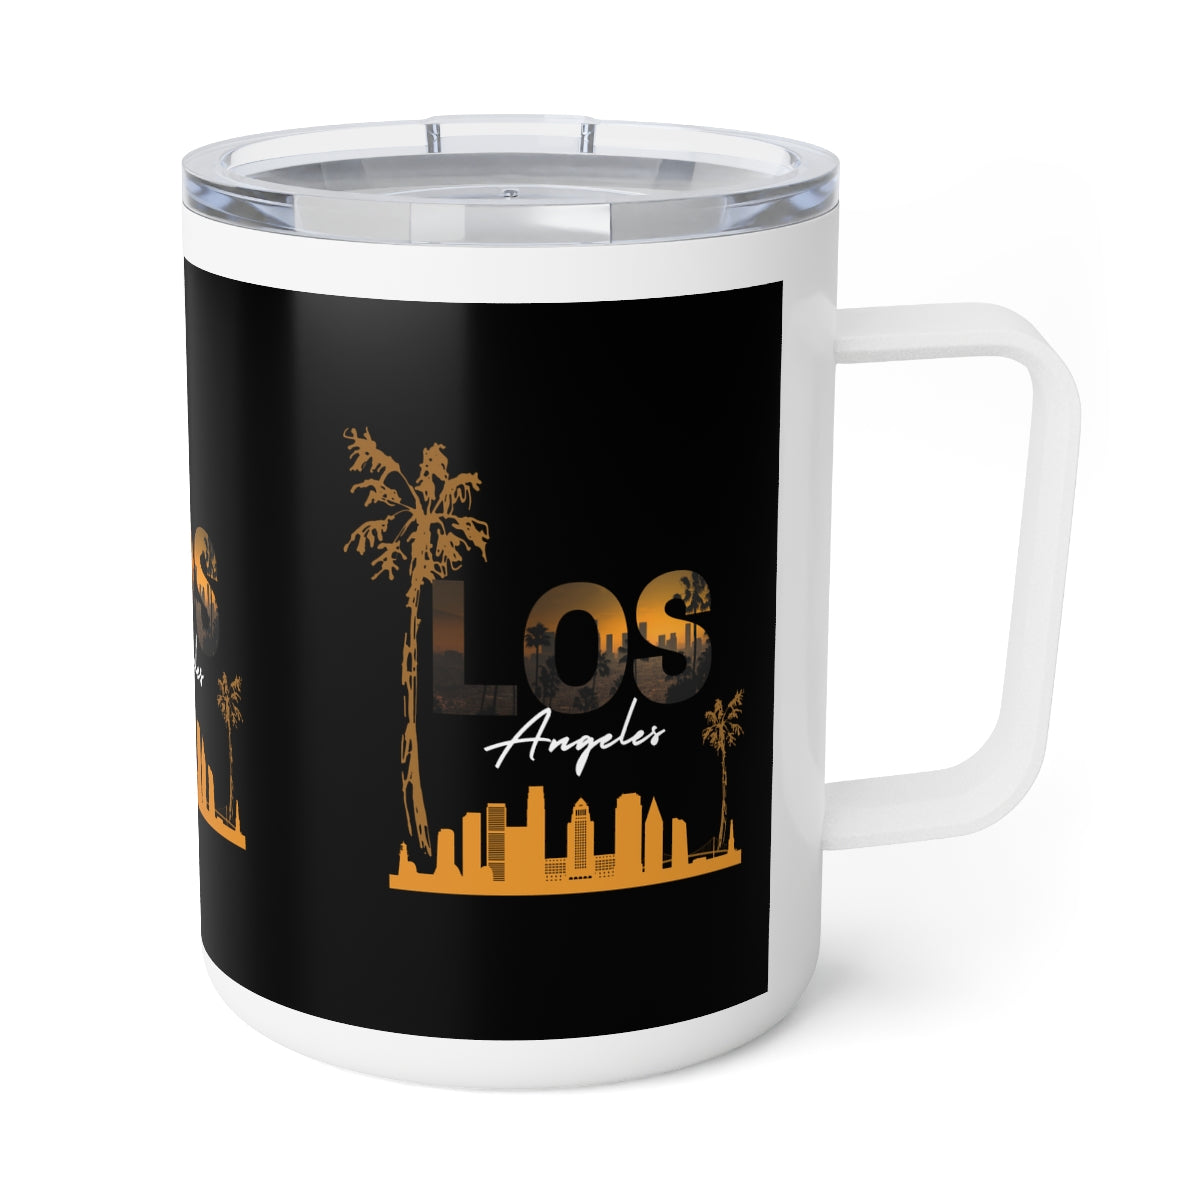 Los Angeles Coffee Mug, 10oz